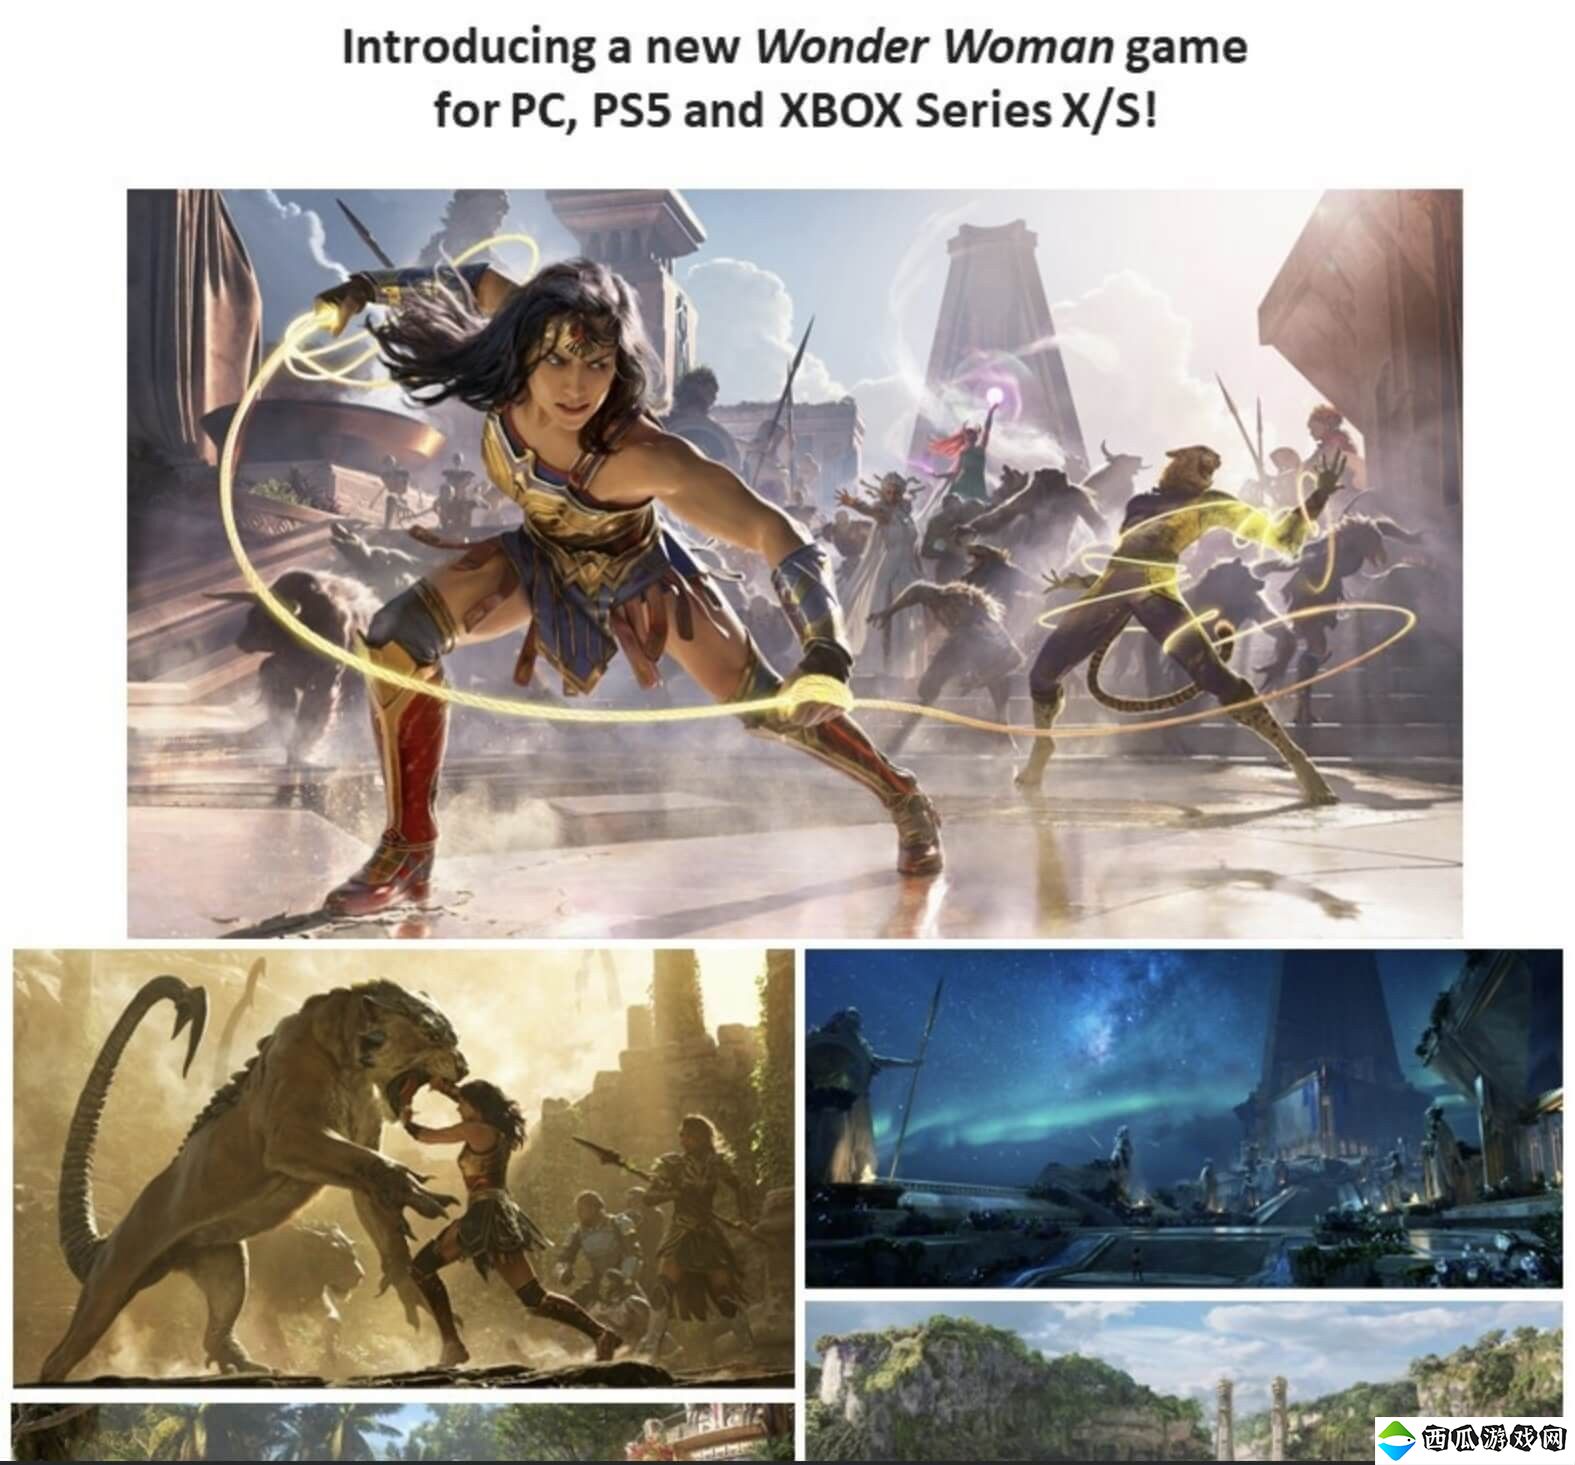 《神奇女侠》游戏概念图和首批细节泄露 有复仇系统